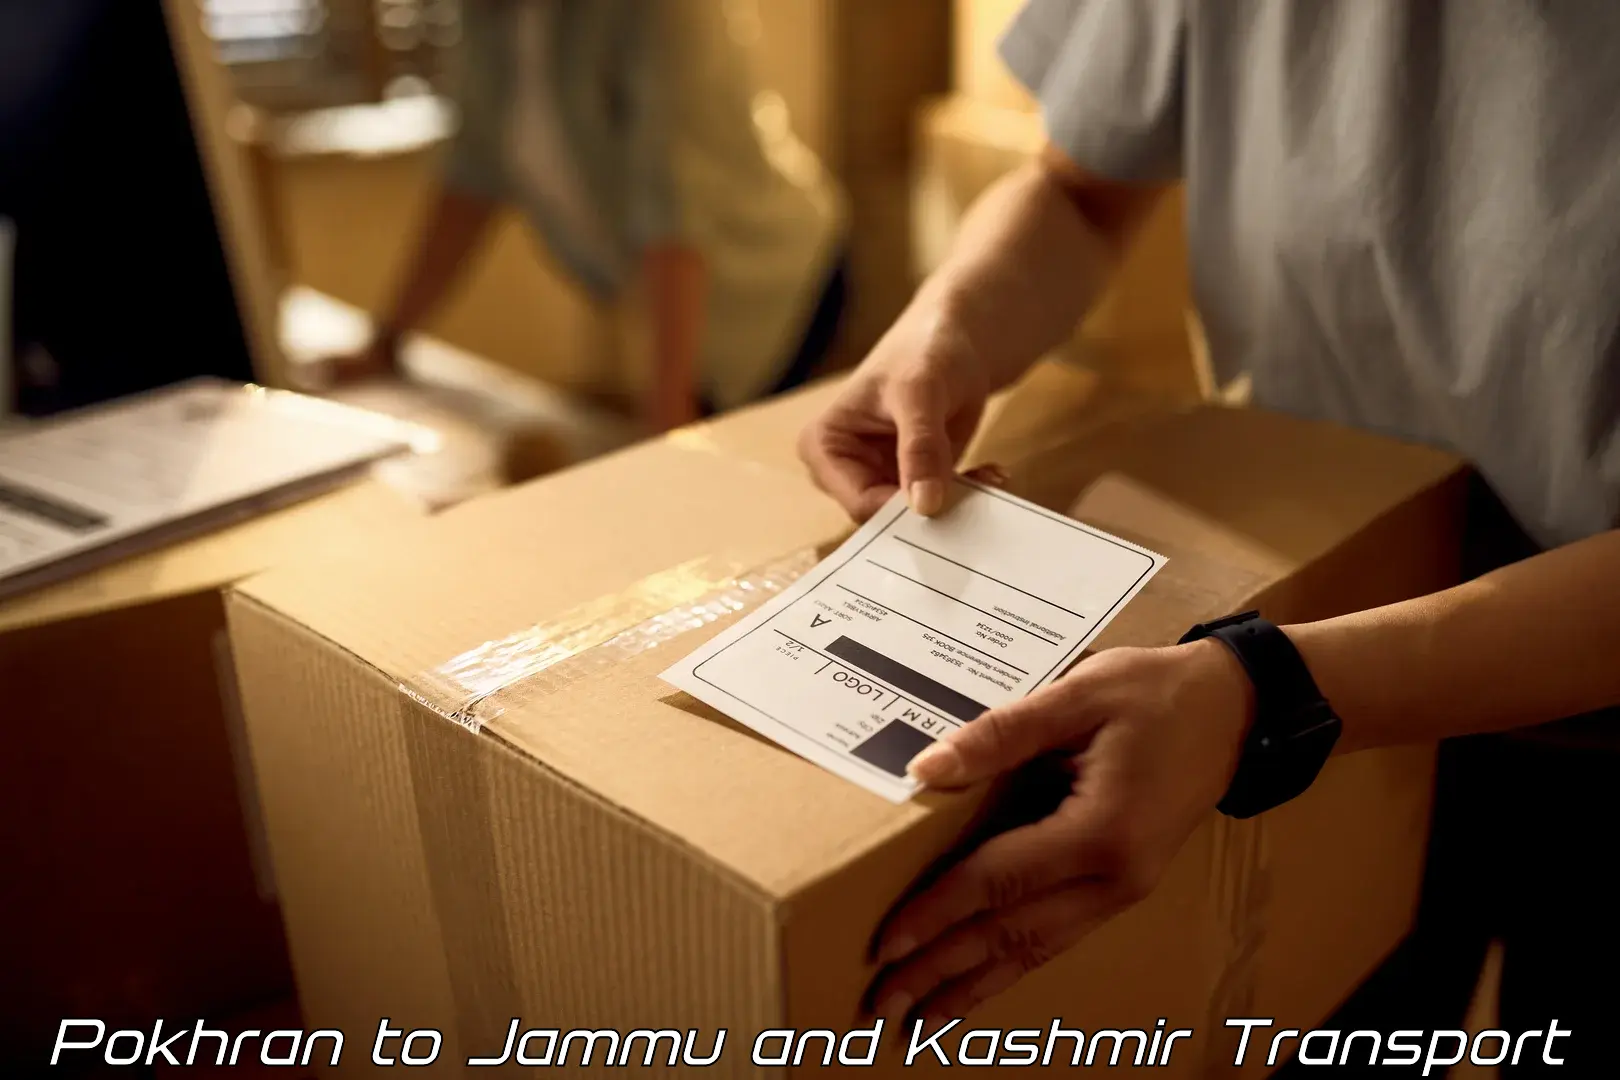 Online transport service Pokhran to Jammu